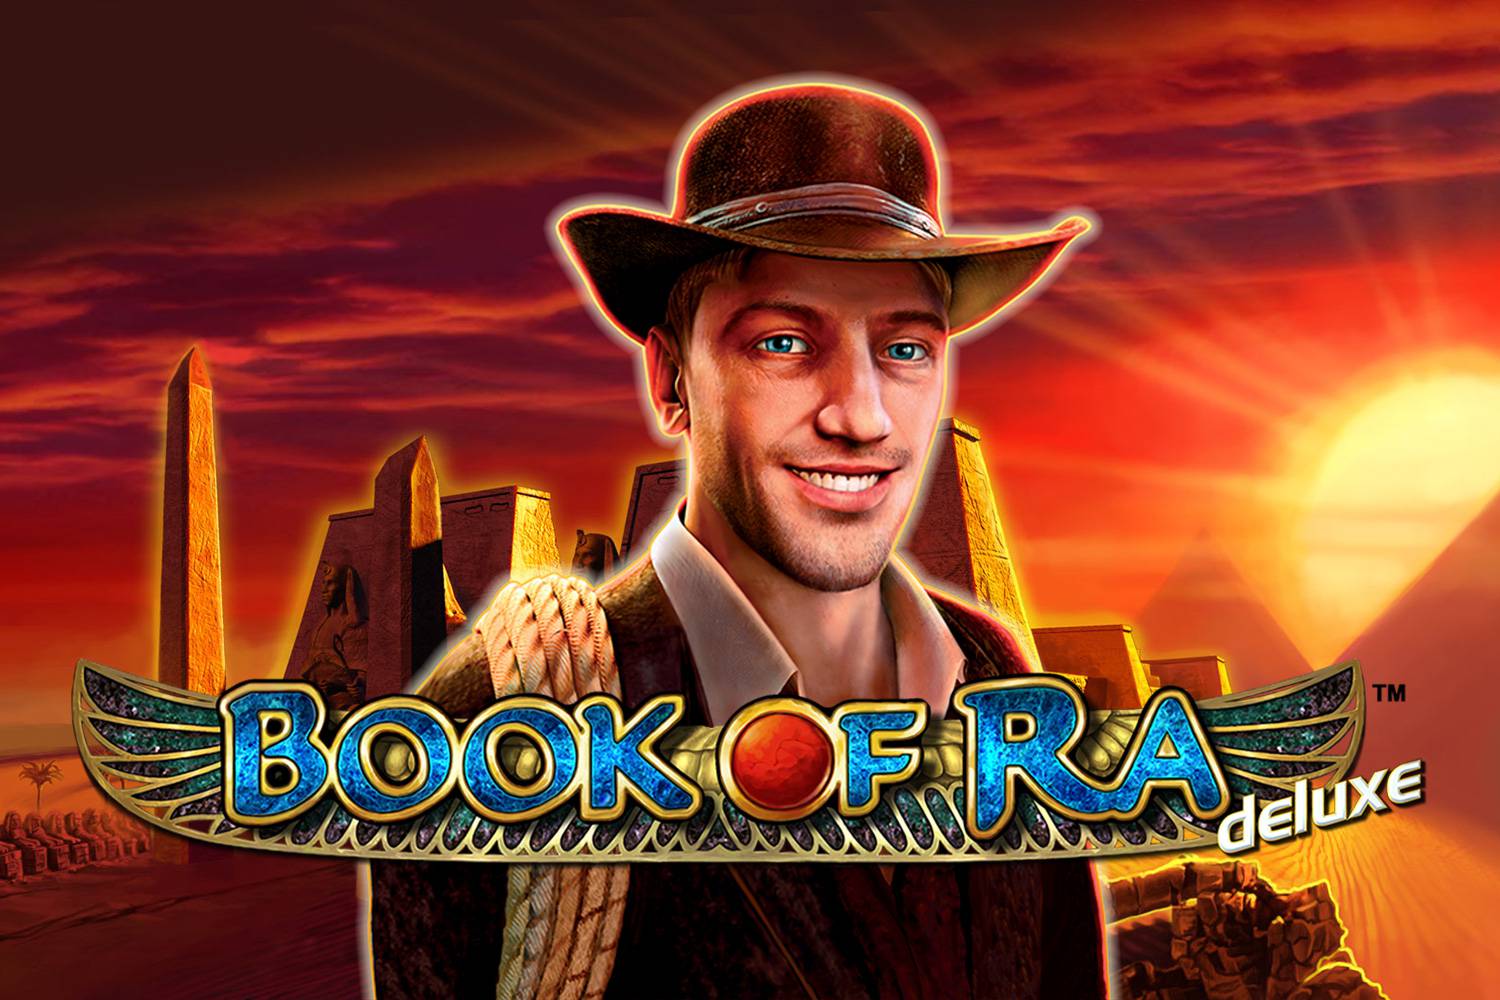 Book of Ra online casino igra ima veću šansu za dobitak?